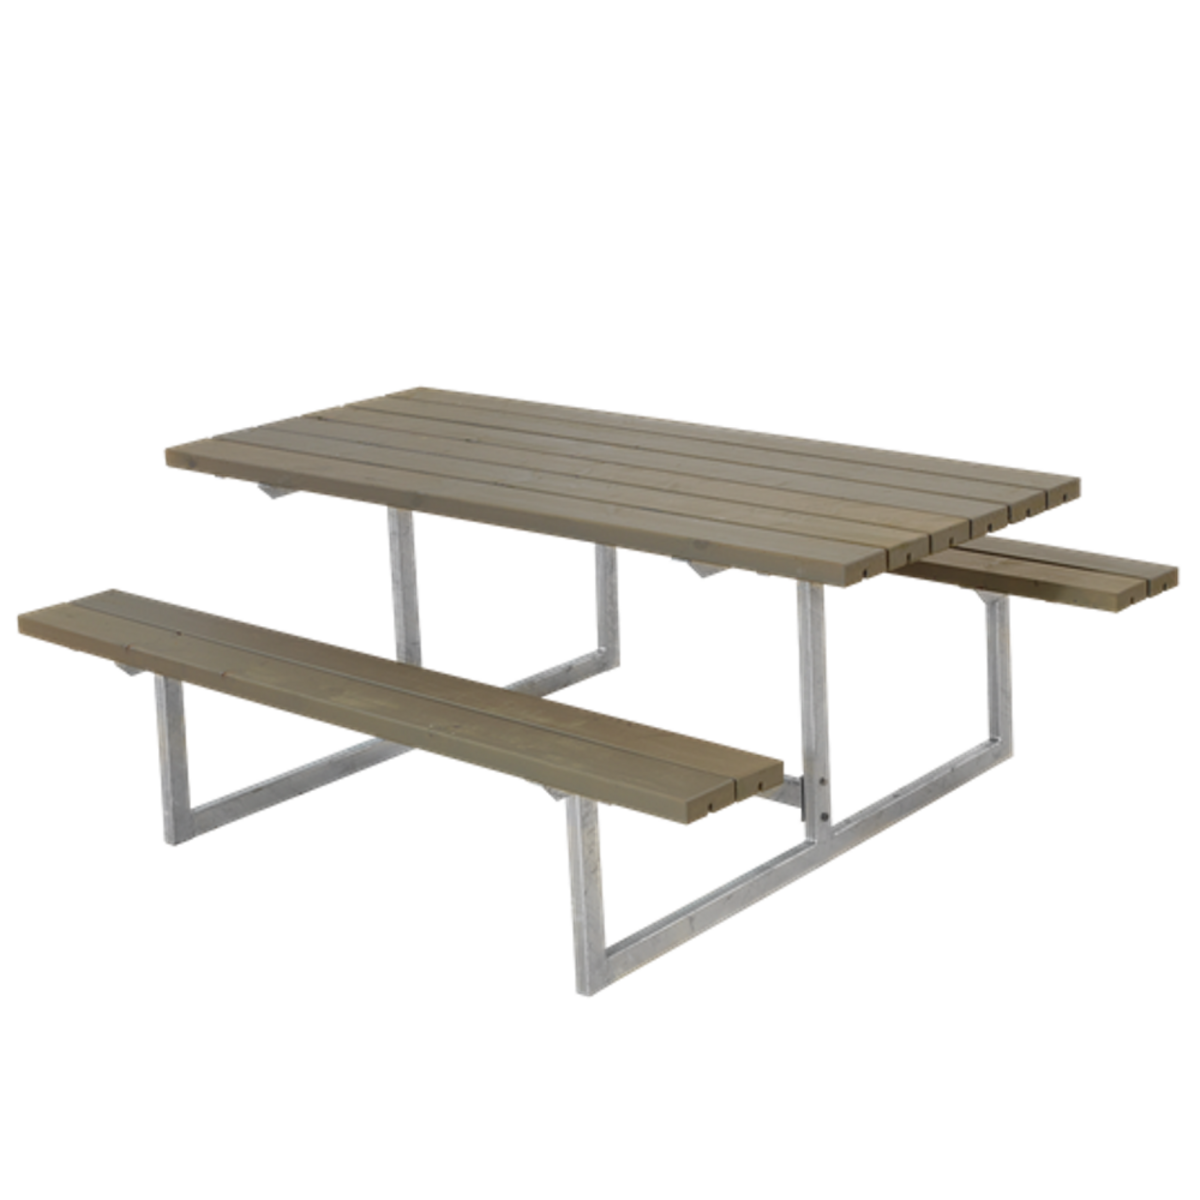 Picknicktisch, Gartentisch, Gartenmöbel  BASIC - 177cm - Grau grün